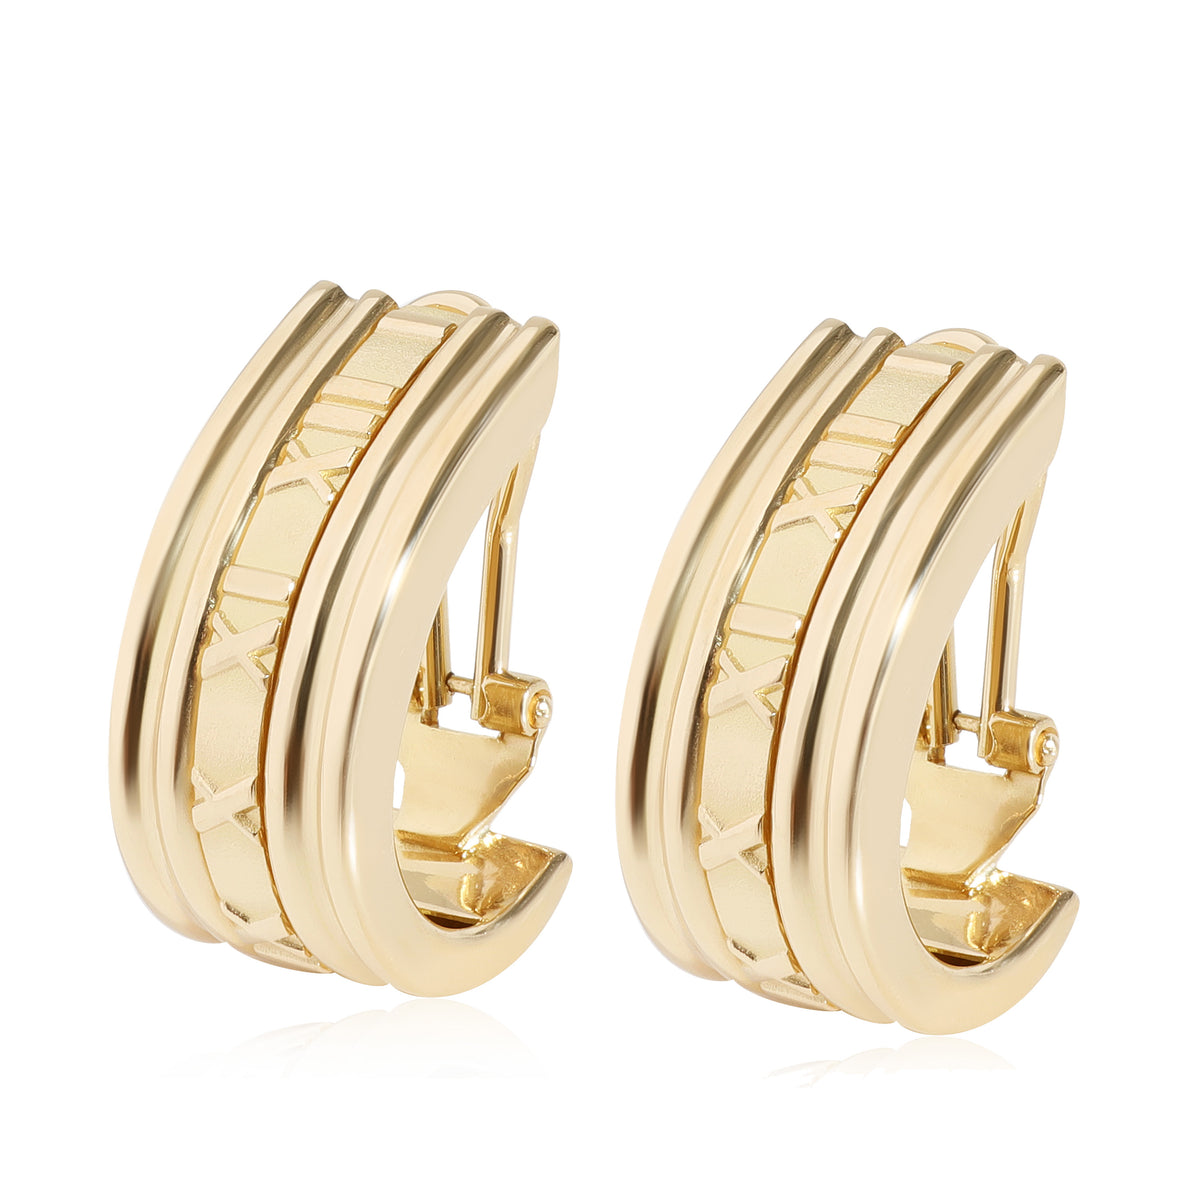 Tiffany & Co. Atlas Earrings in 18k Yellow Gold